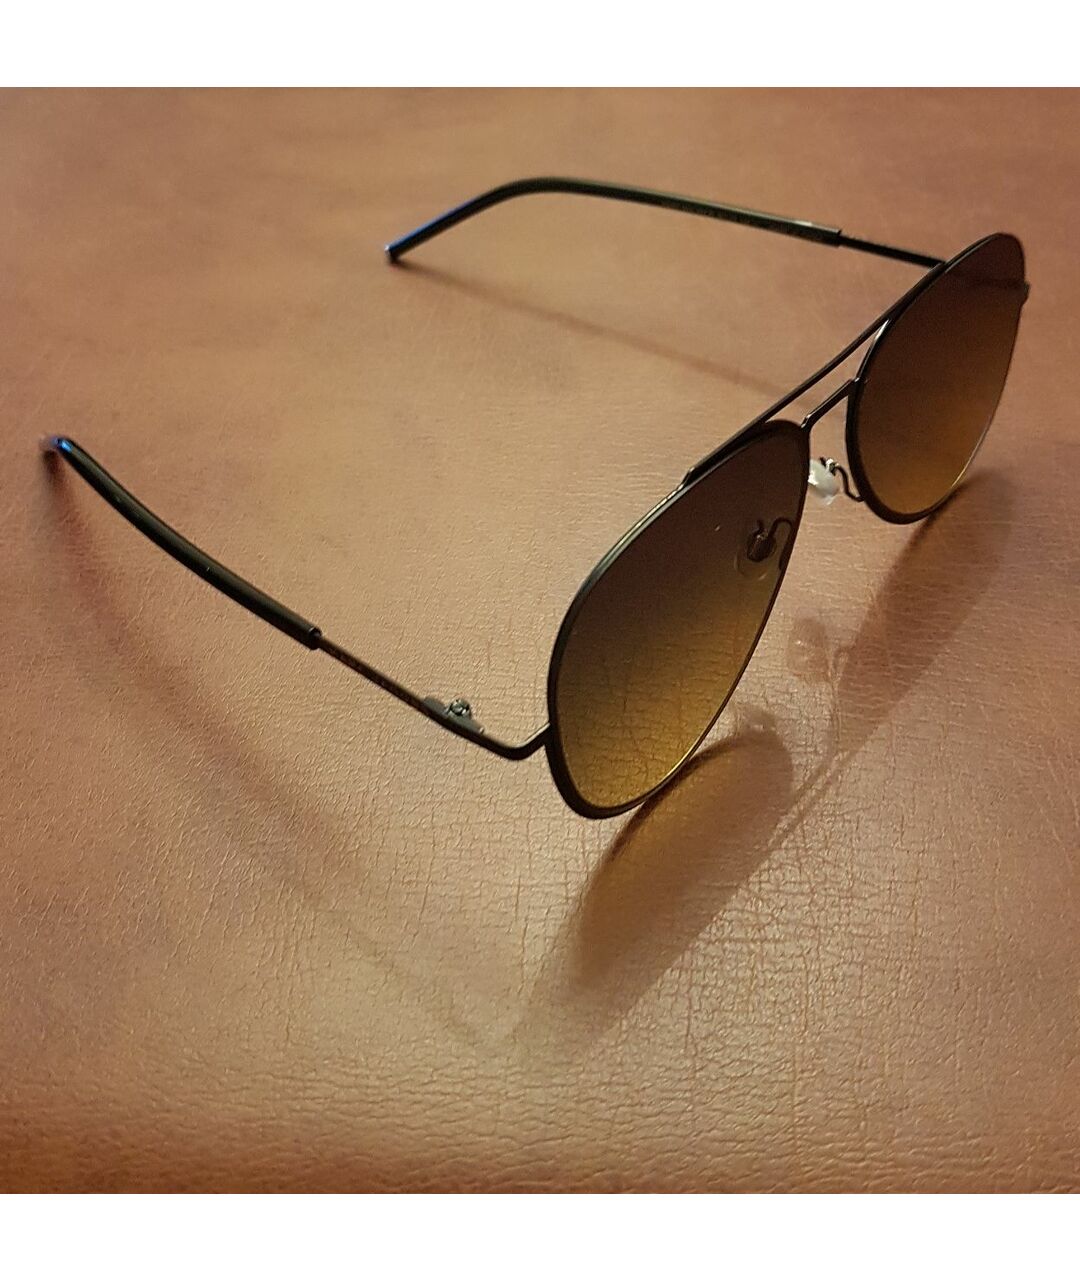 MARC JACOBS Черные пластиковые солнцезащитные очки, фото 3